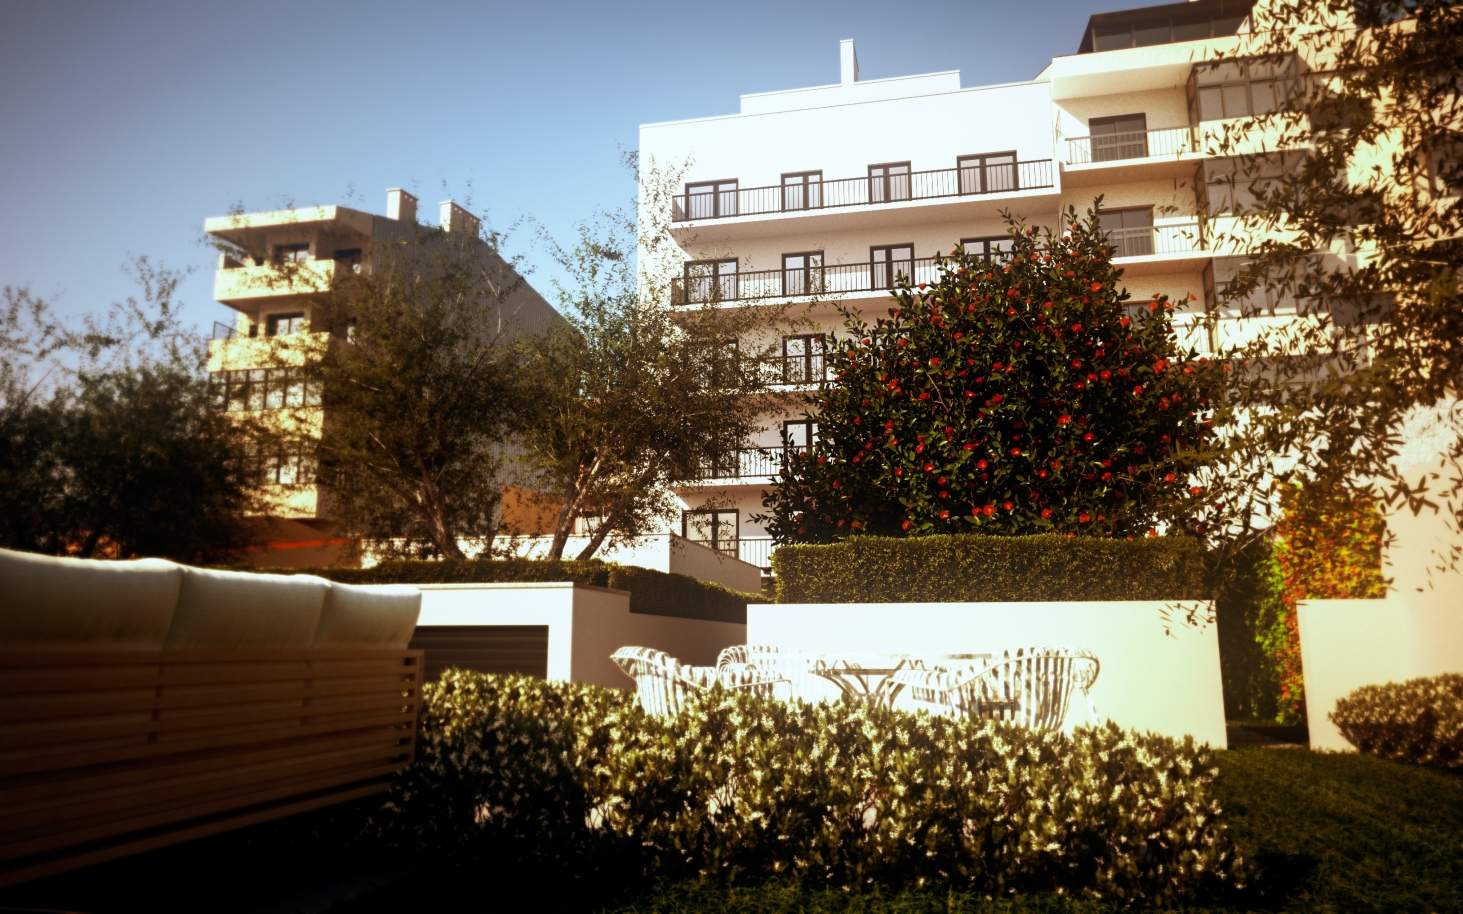 Venda de apartamento com jardim em empreendimento novo, Porto_106277